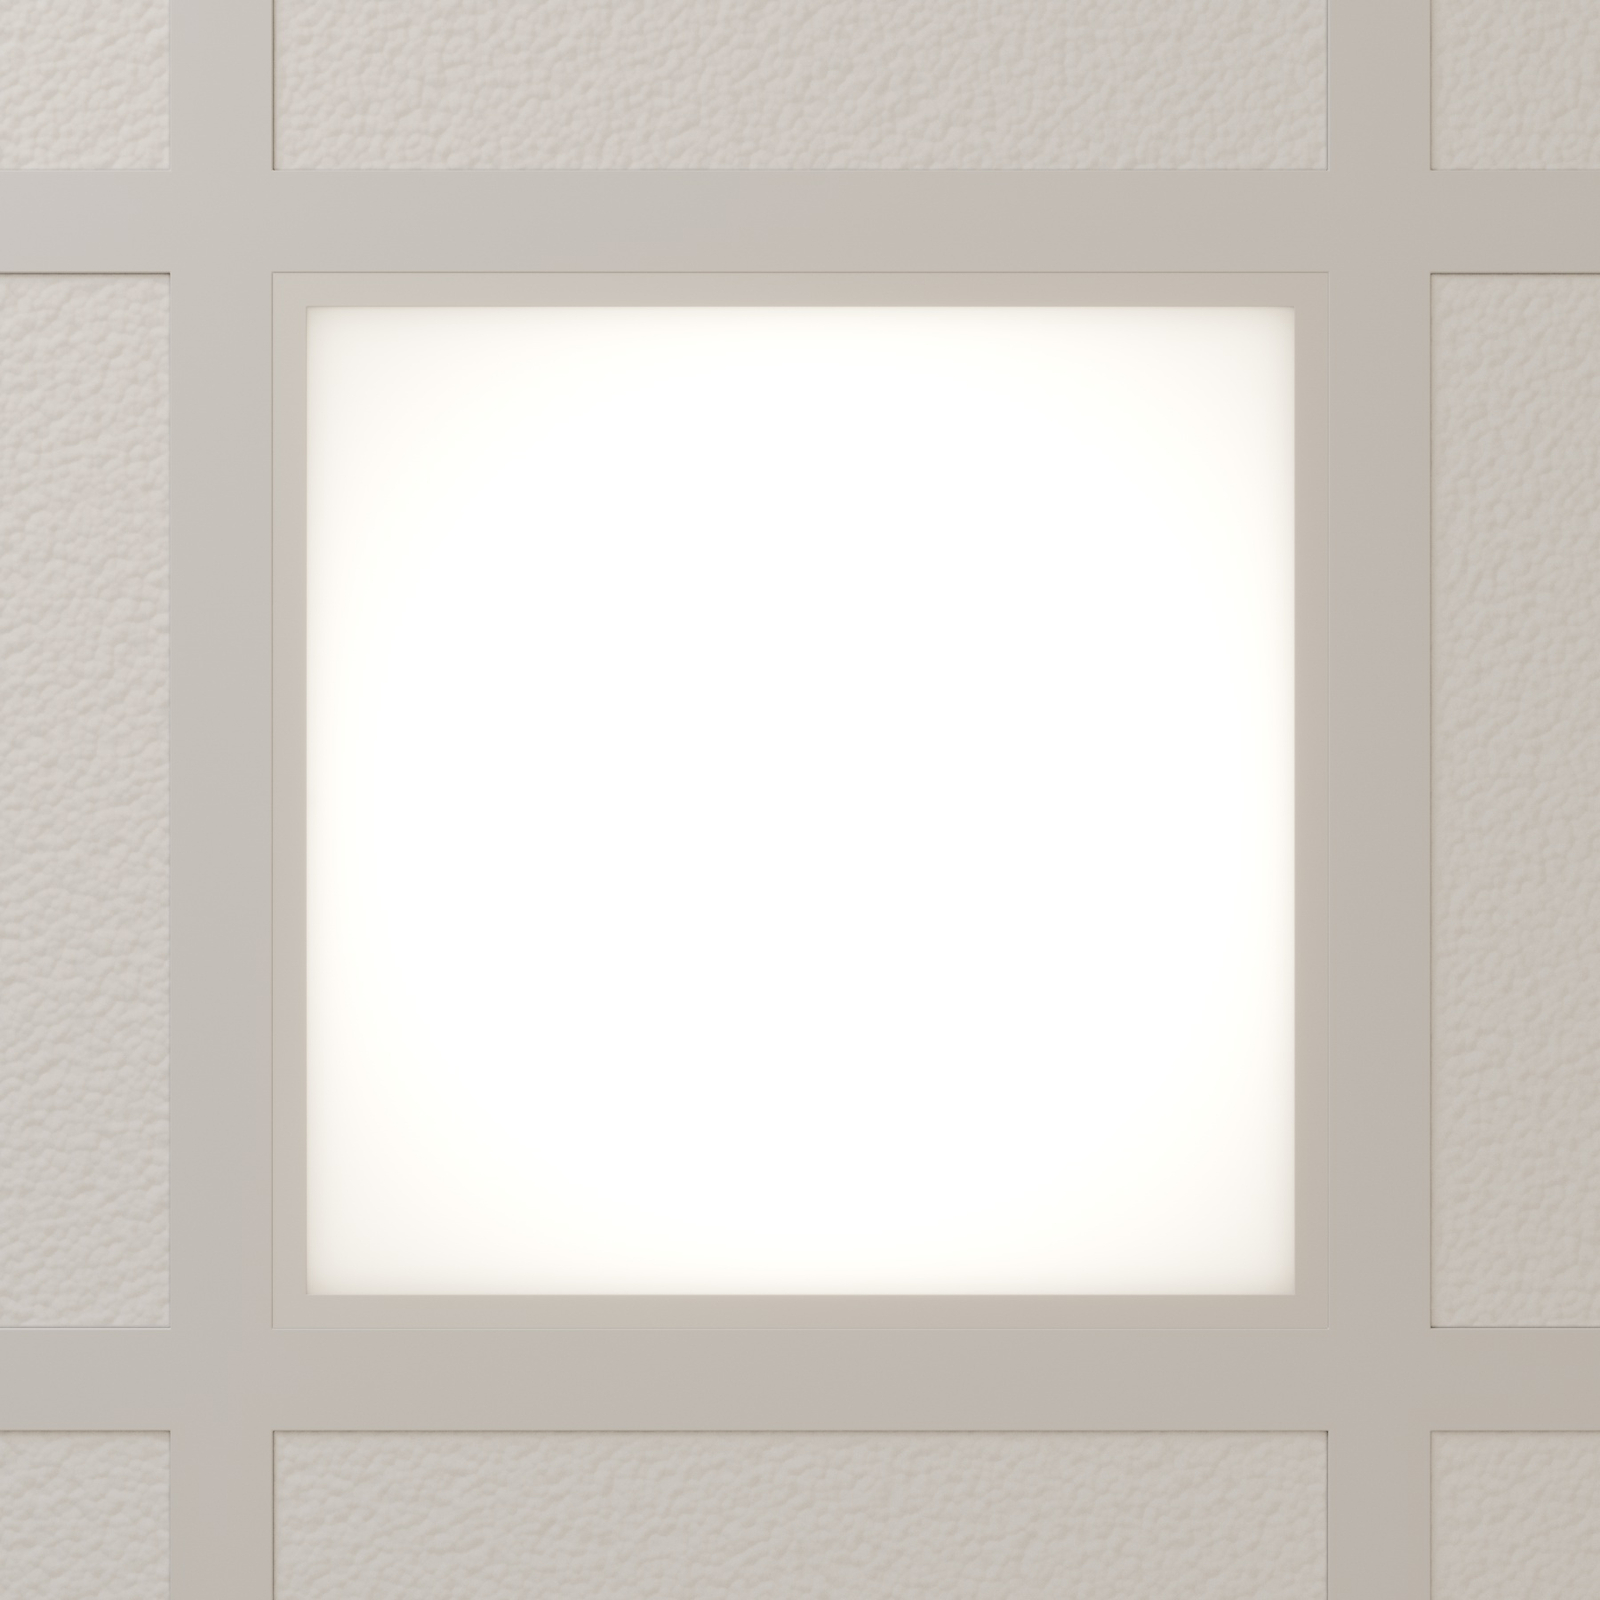 Arcchio Panel empotrado LED Viñas, 4.000 K, 36 W, 62 cm x 62 cm